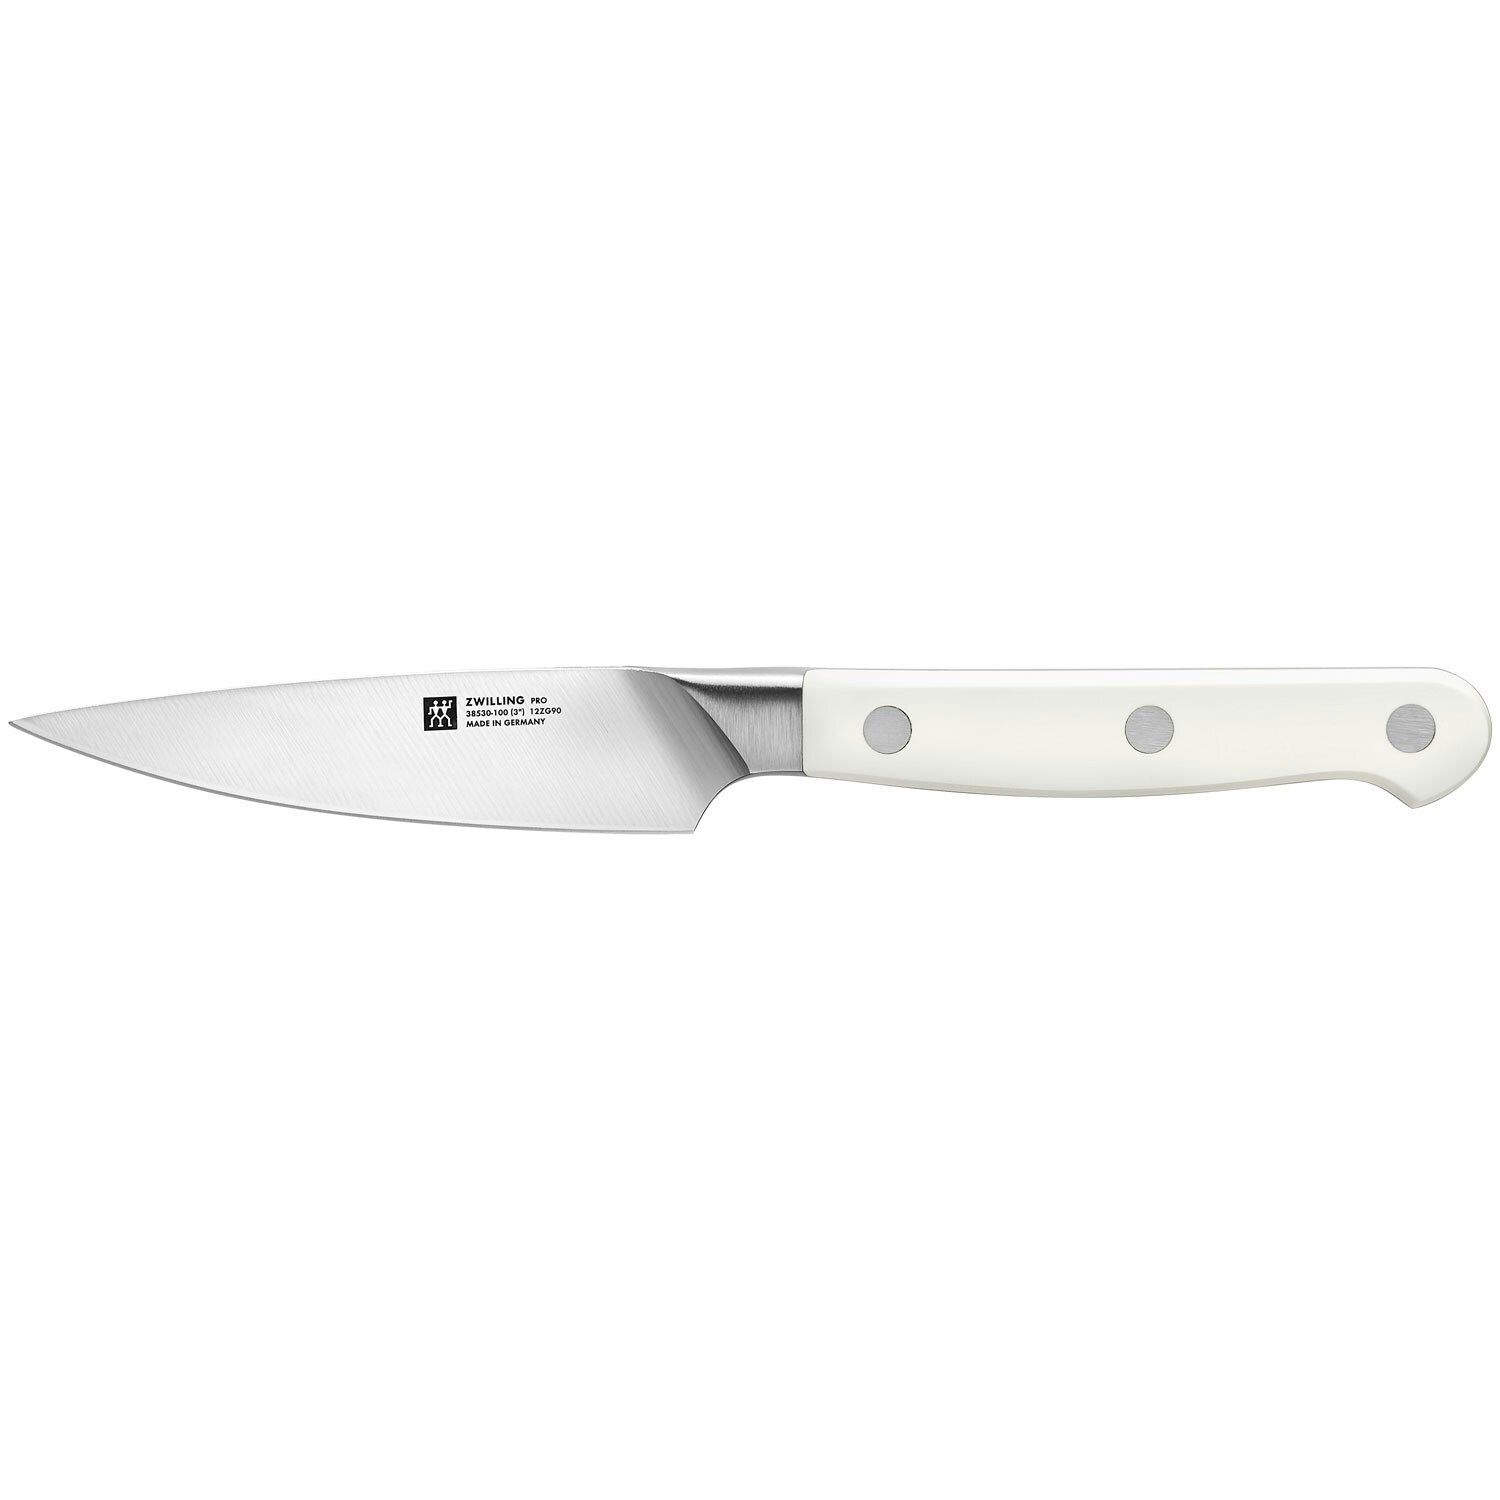 https://royaldesign.com/image/2/zwilling-pro-le-blanc-paring-knife-10-cm-0